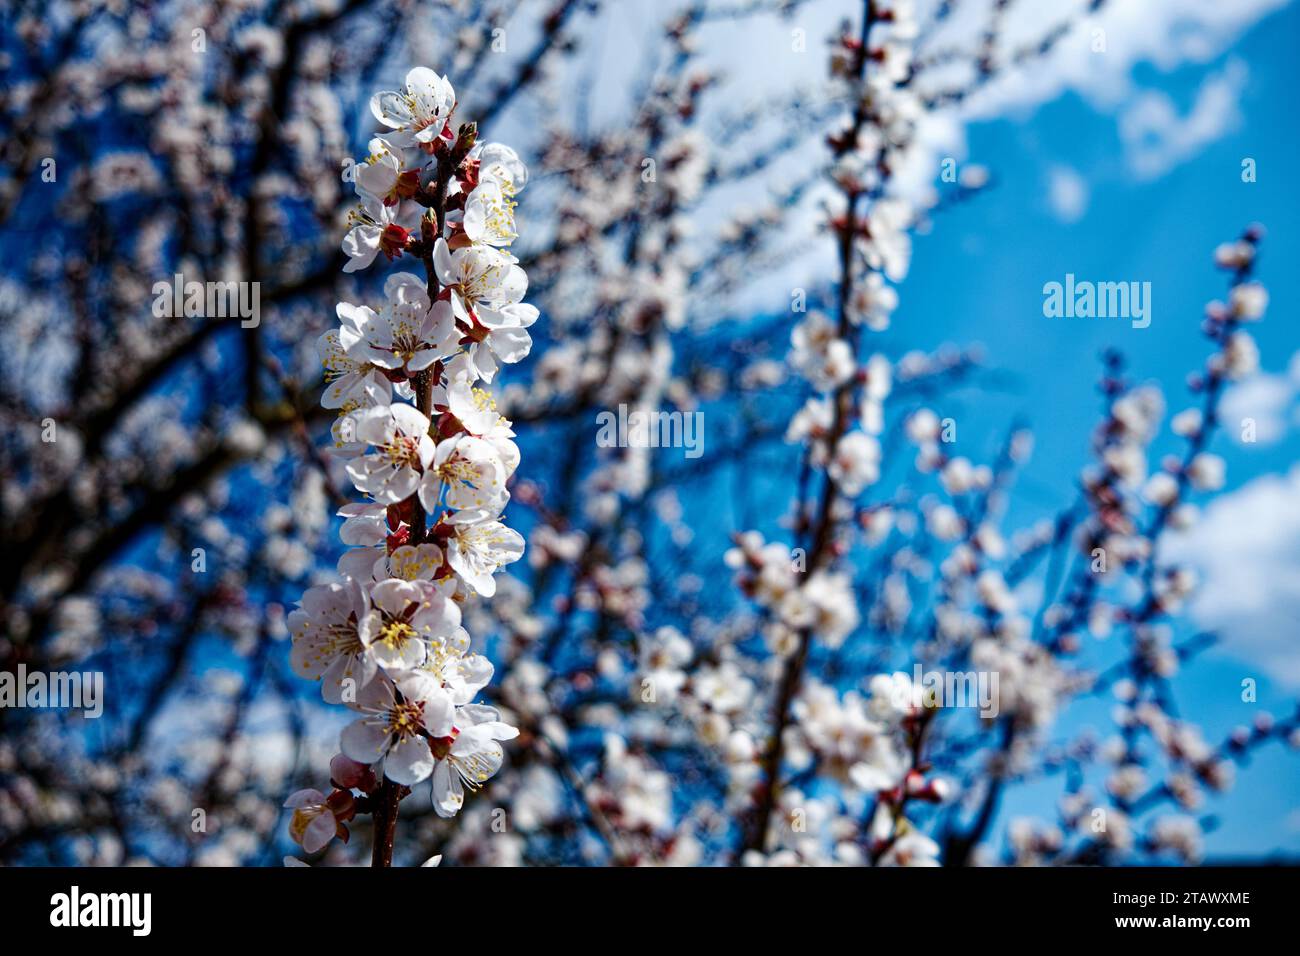 Die Pracht der Natur wird in diesem Nahaufnahme-Bild gezeigt, das einen Zweig mit zarten Blütenknospen auf einem Aprikosenbaum zeigt, eingerahmt von der leuchtenden blume Stockfoto